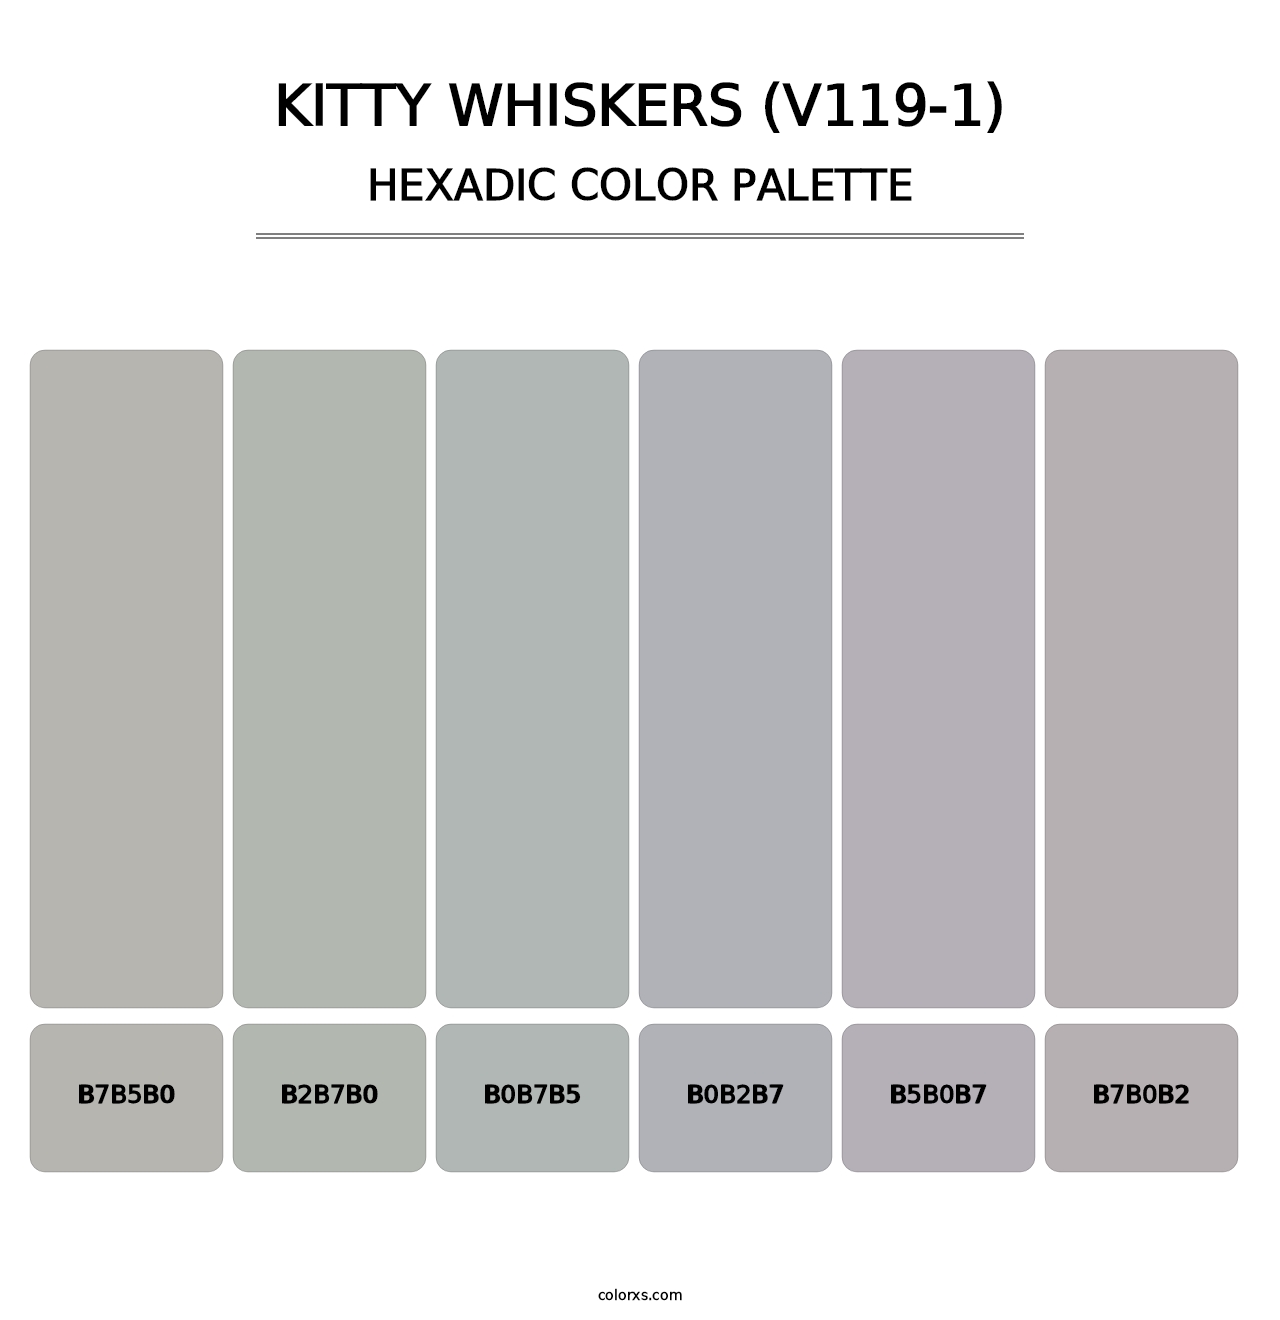 Kitty Whiskers (V119-1) - Hexadic Color Palette